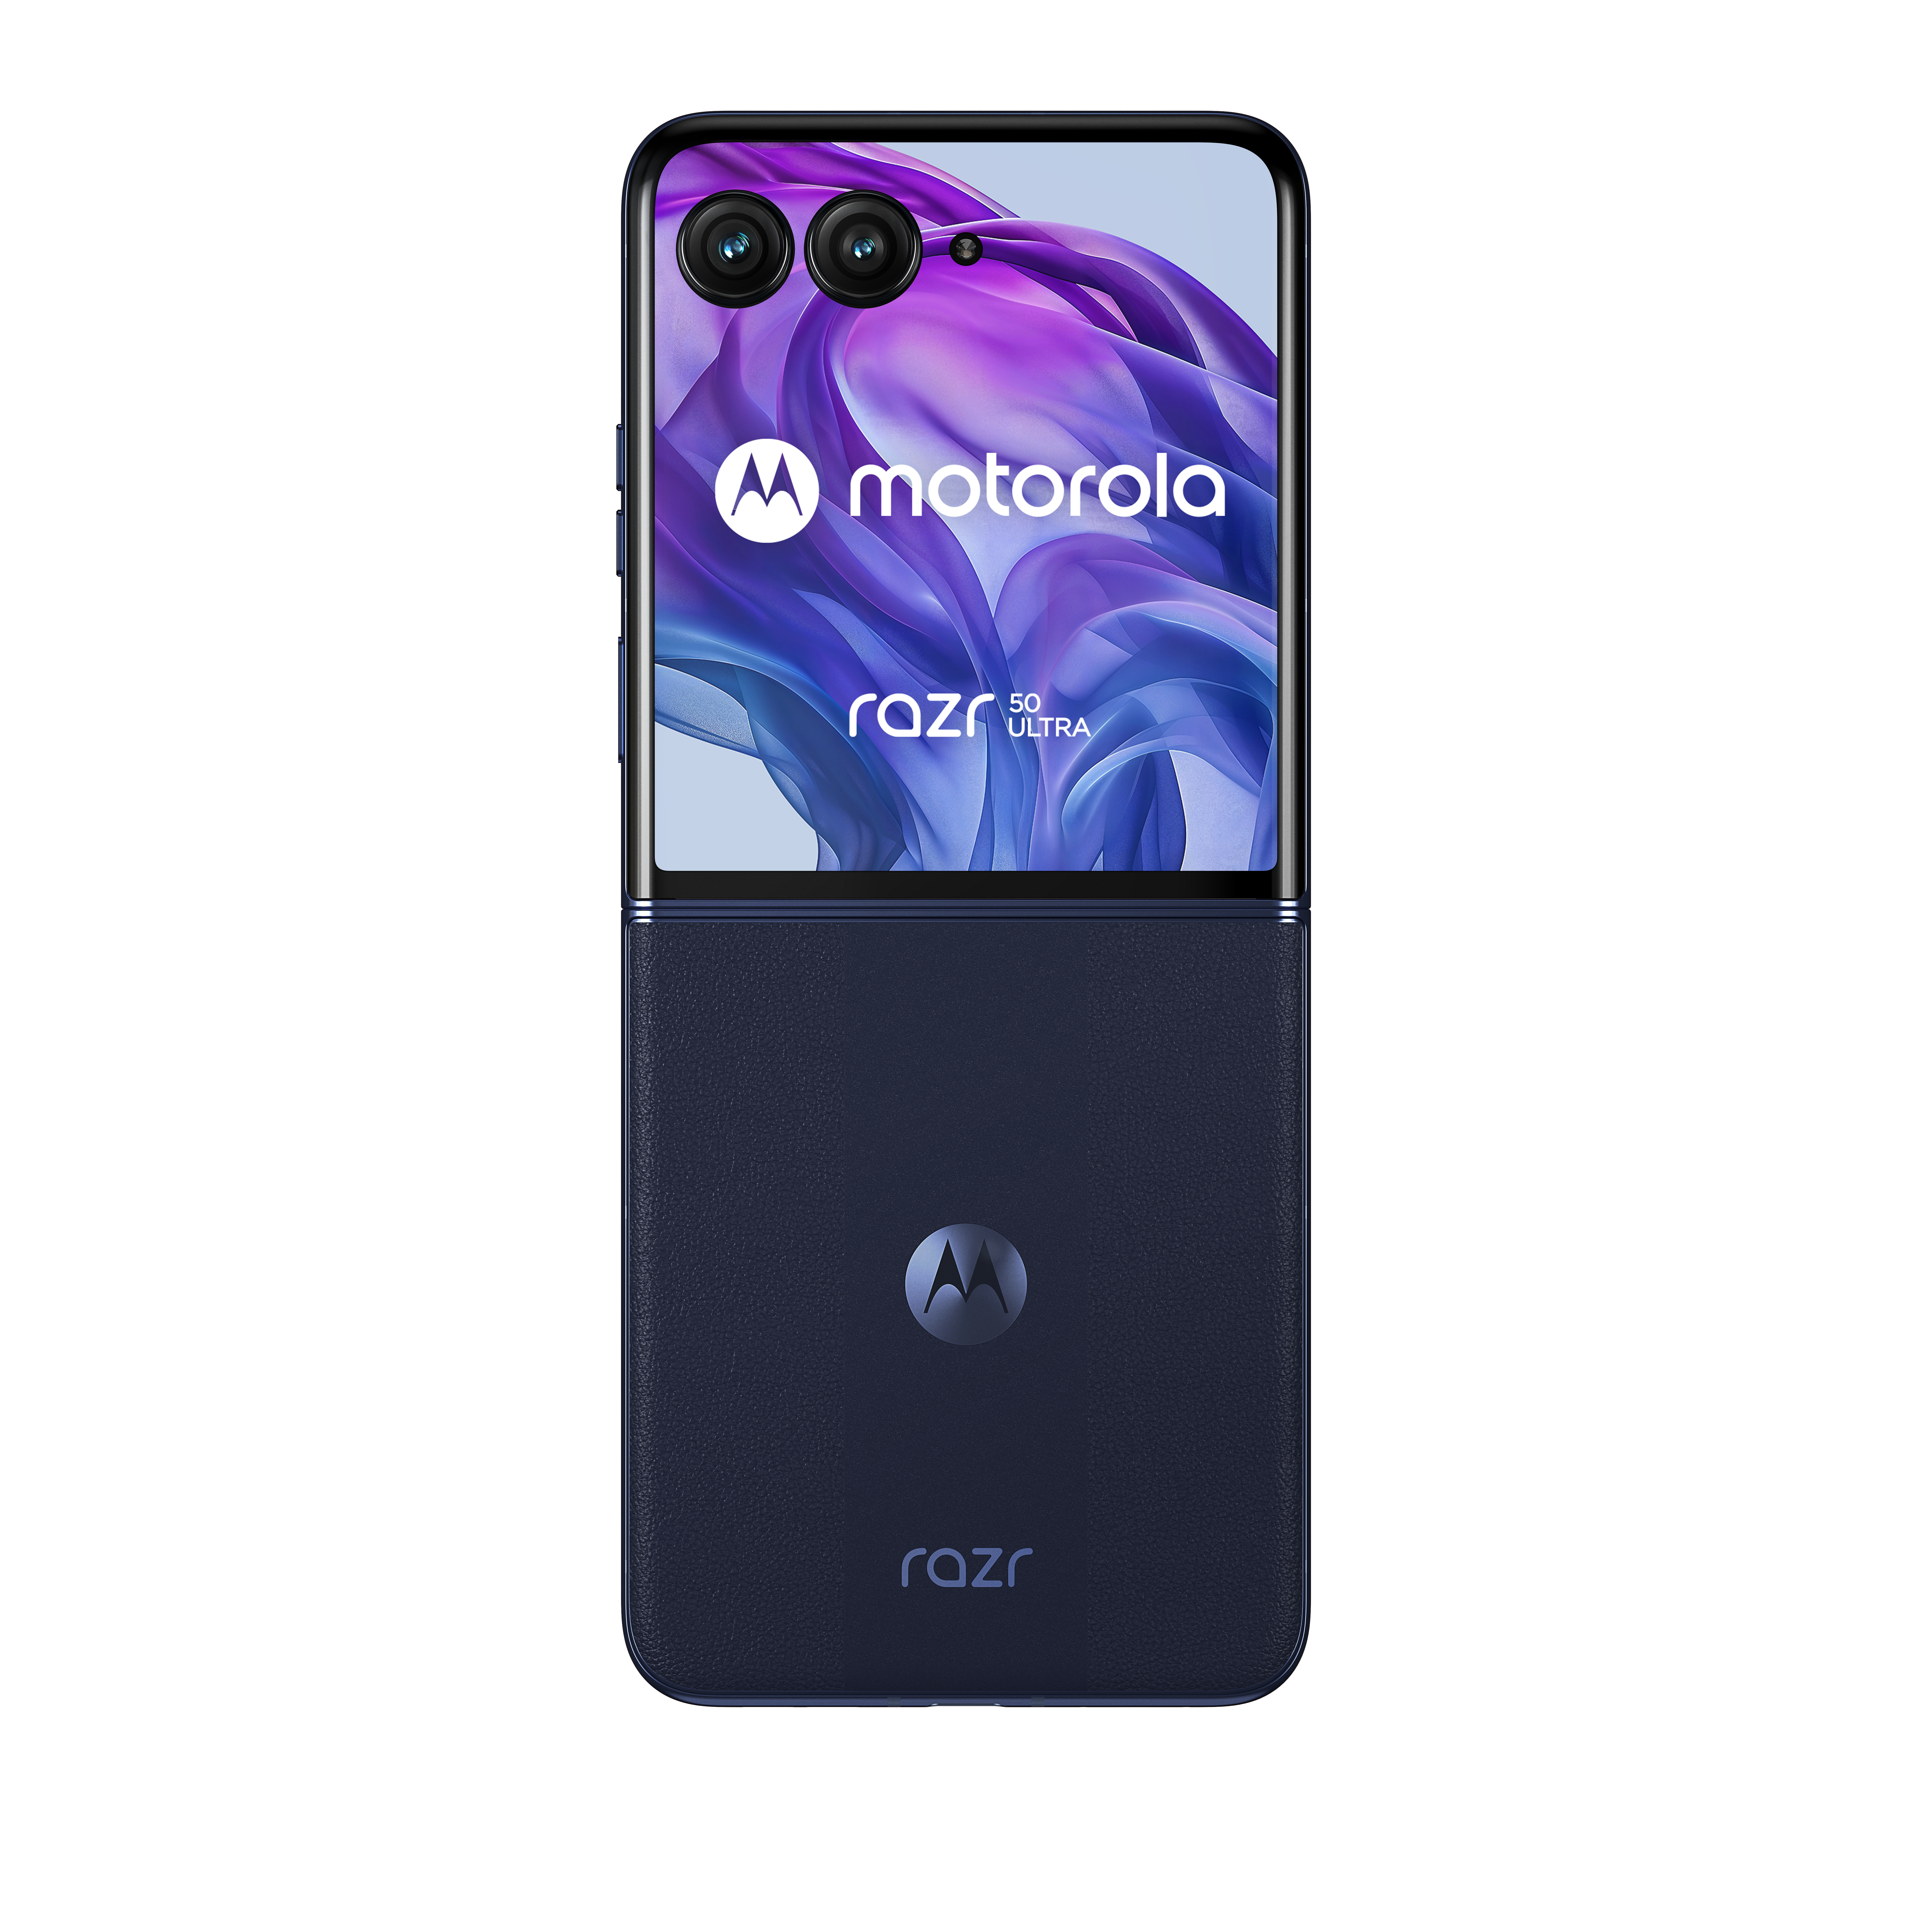 Motorola razr razr 50 ultra / 512 GB / Midnight Blue